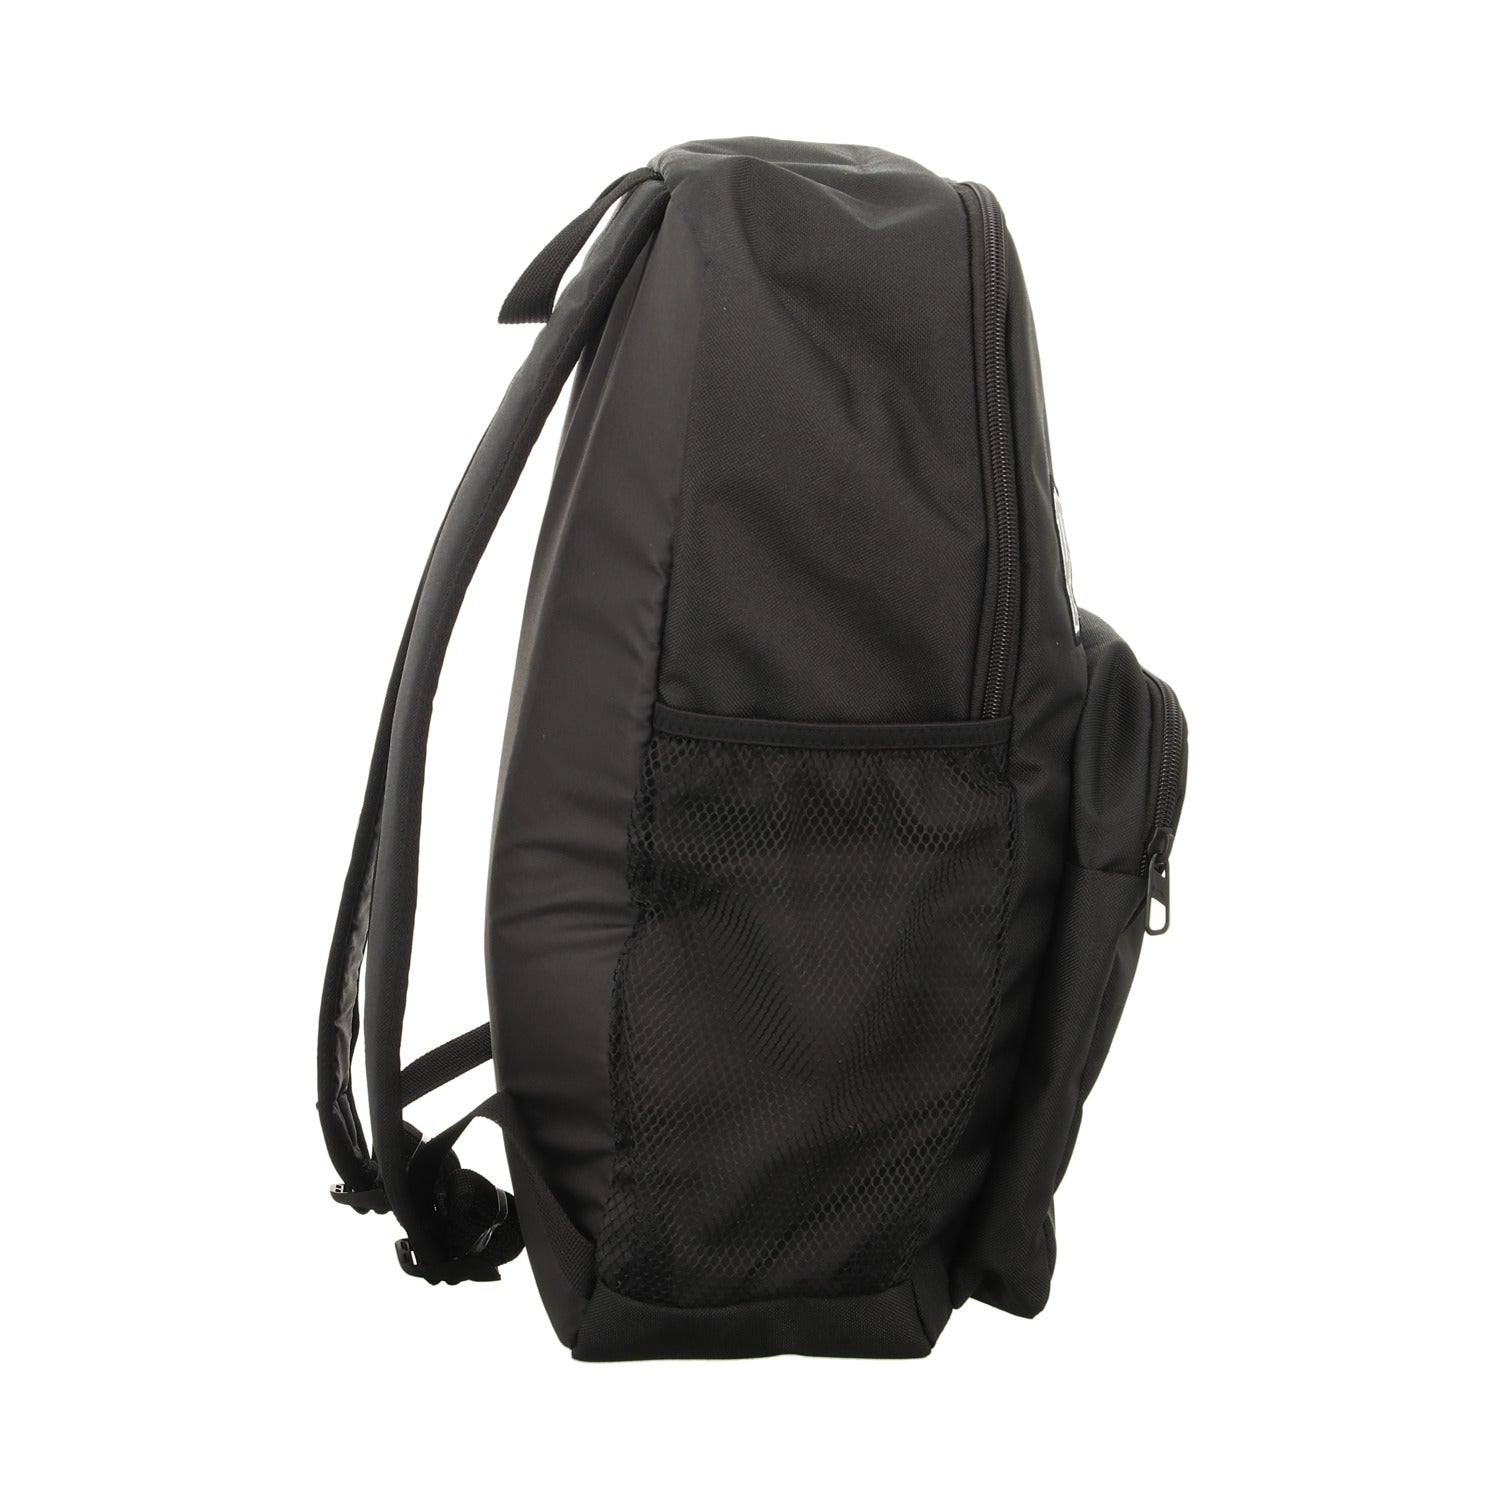 Puma Sportrucksack Patch Backpack